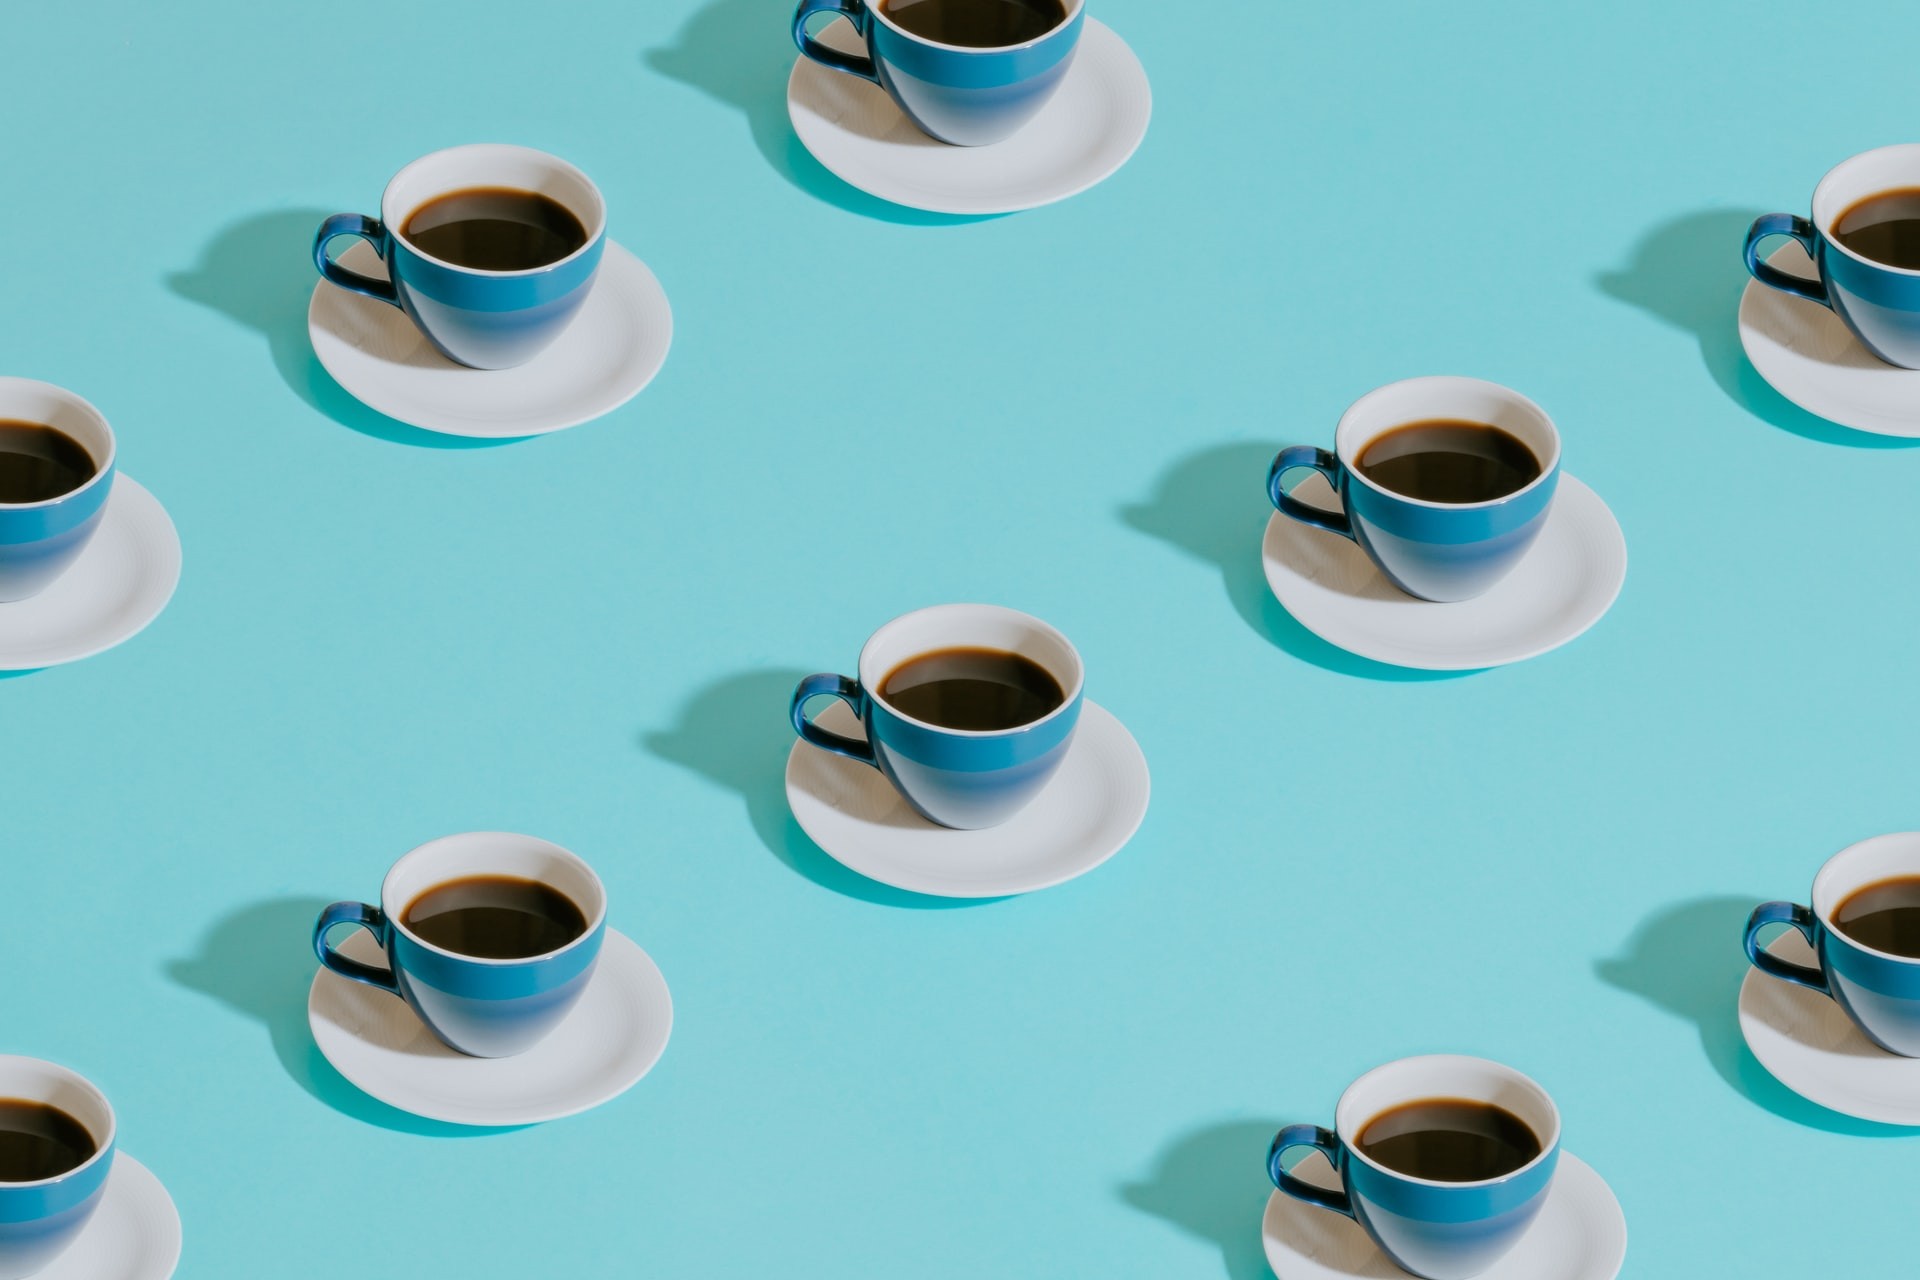 Adoçar café com quantidade moderada de açúcar não faz mal, aponta estudo (Foto: Pawel Czerwinski/Unsplash)